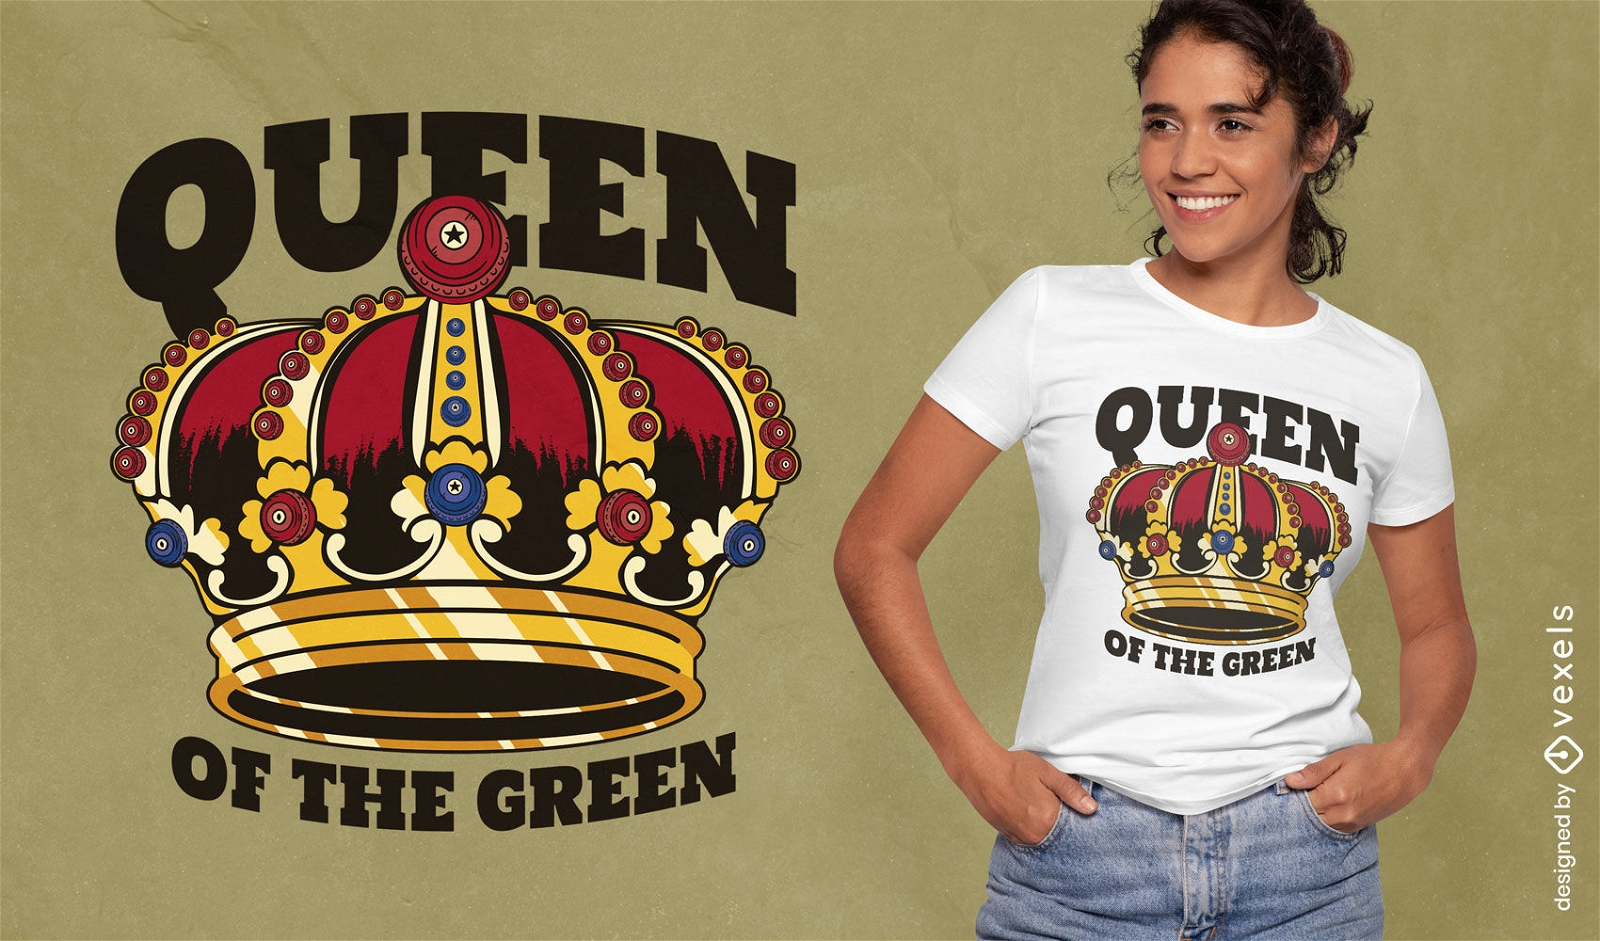 Queen of the green t-shirt design